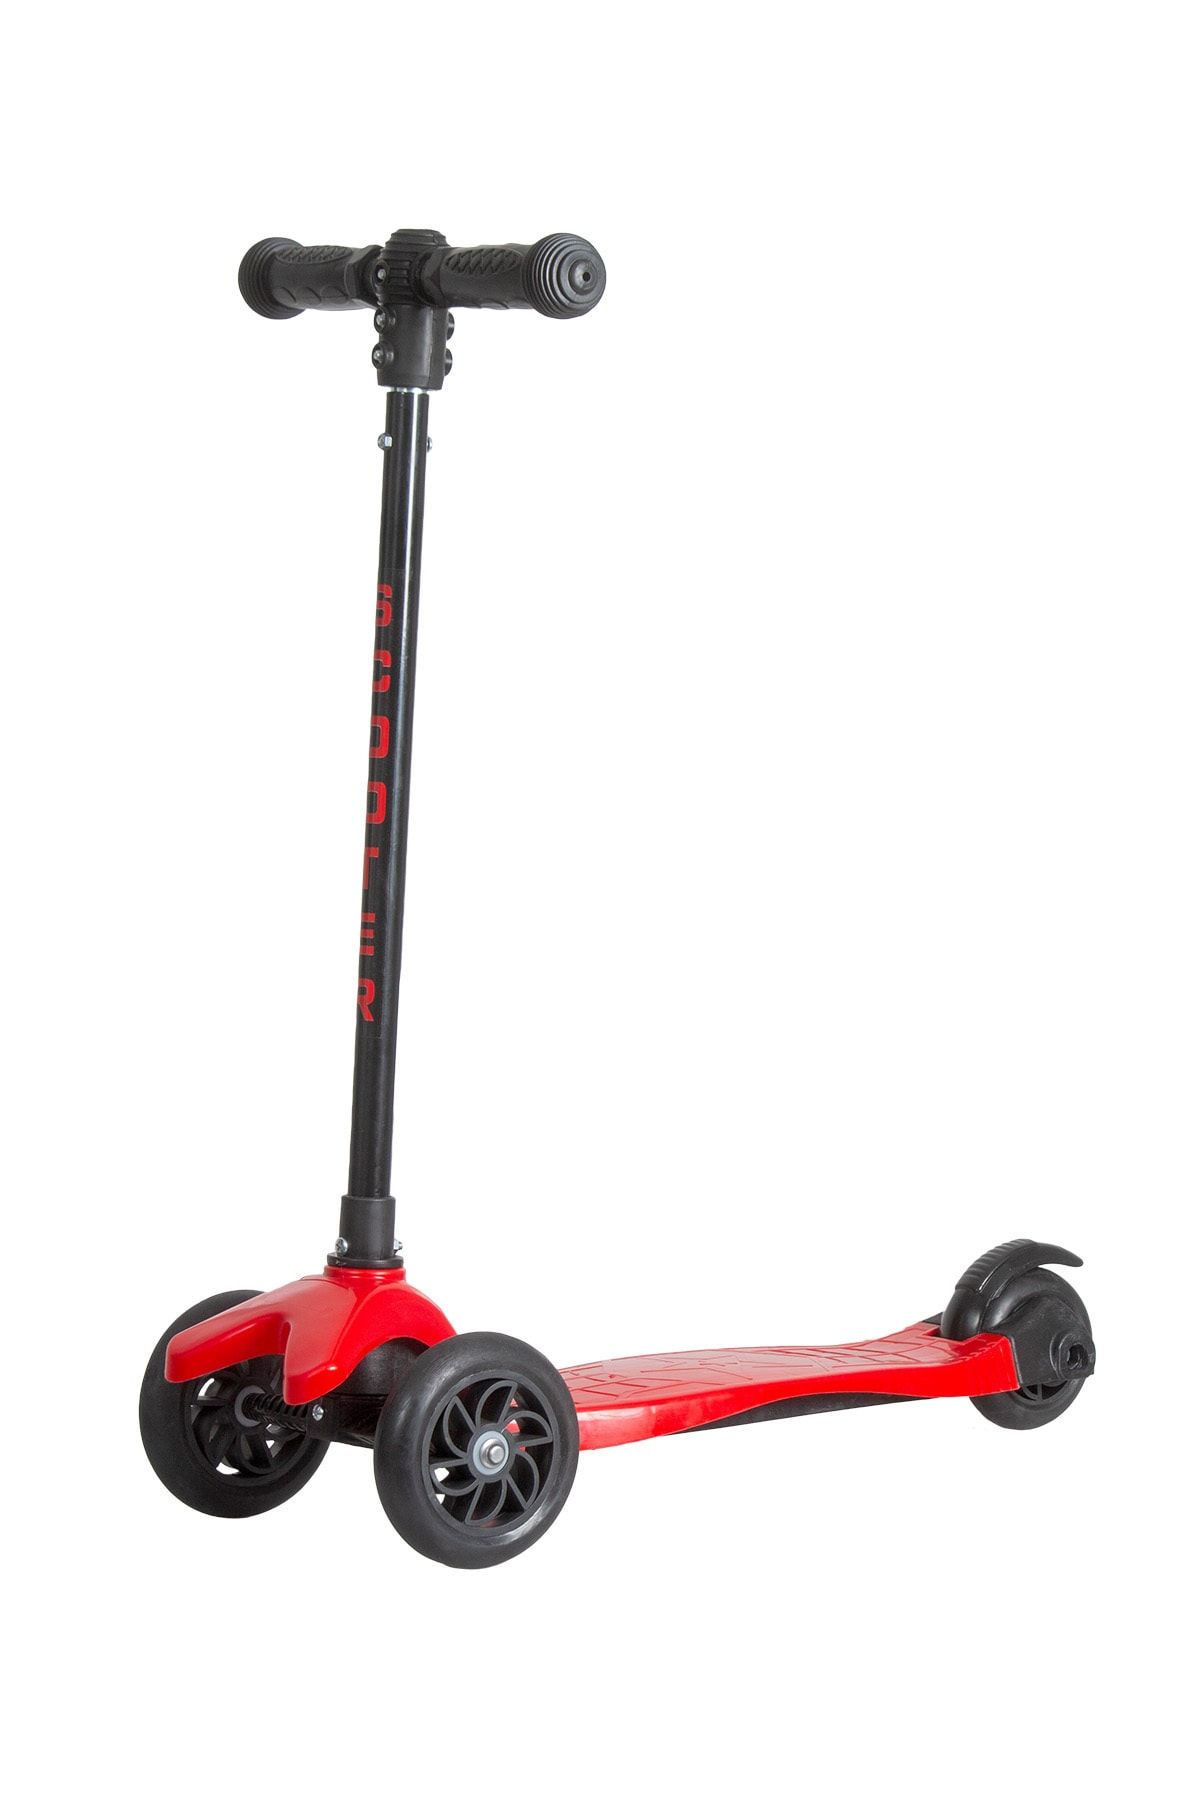 Scooter Üç Tekerlekli , Frenli , Yükseklik Ayarlı Kırmızı  Scooter